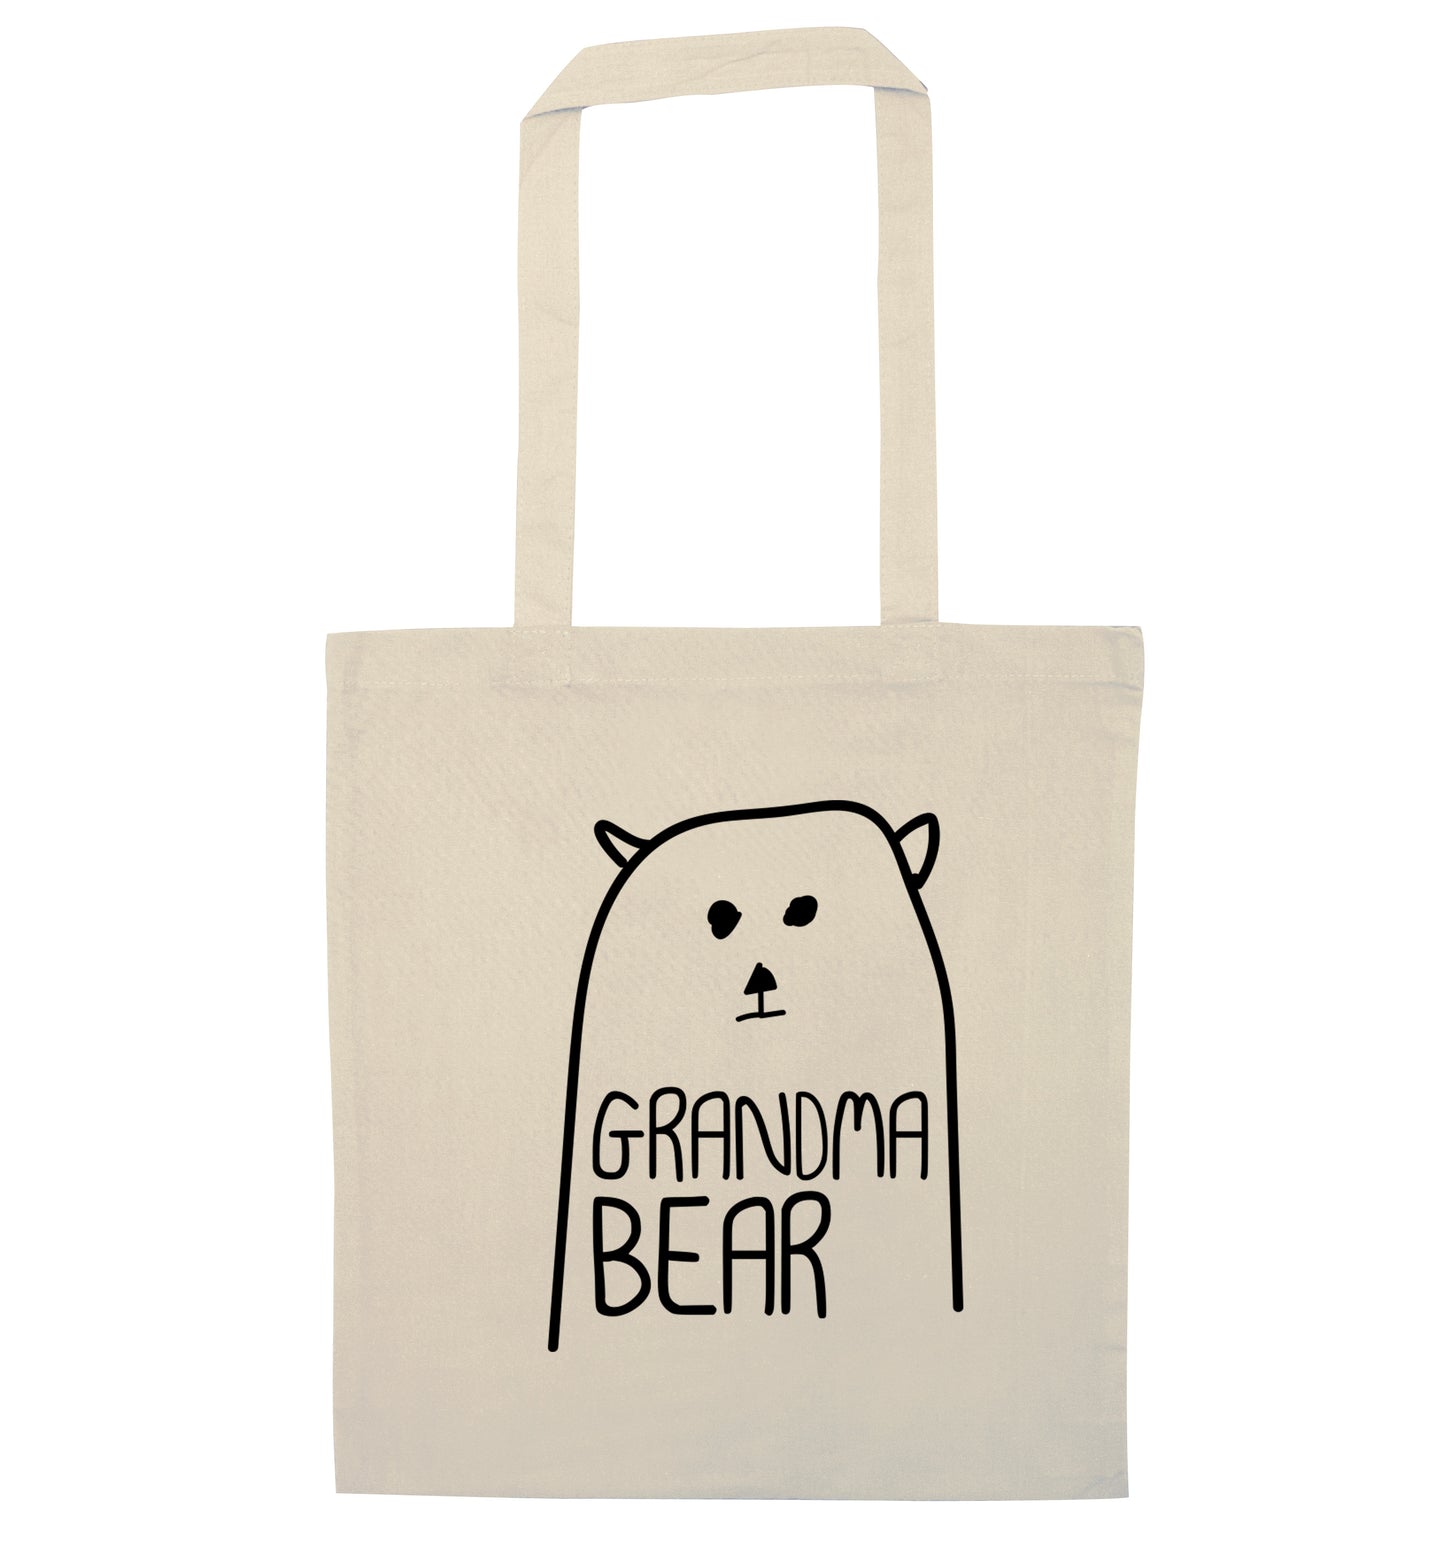 Grandma bear natural tote bag